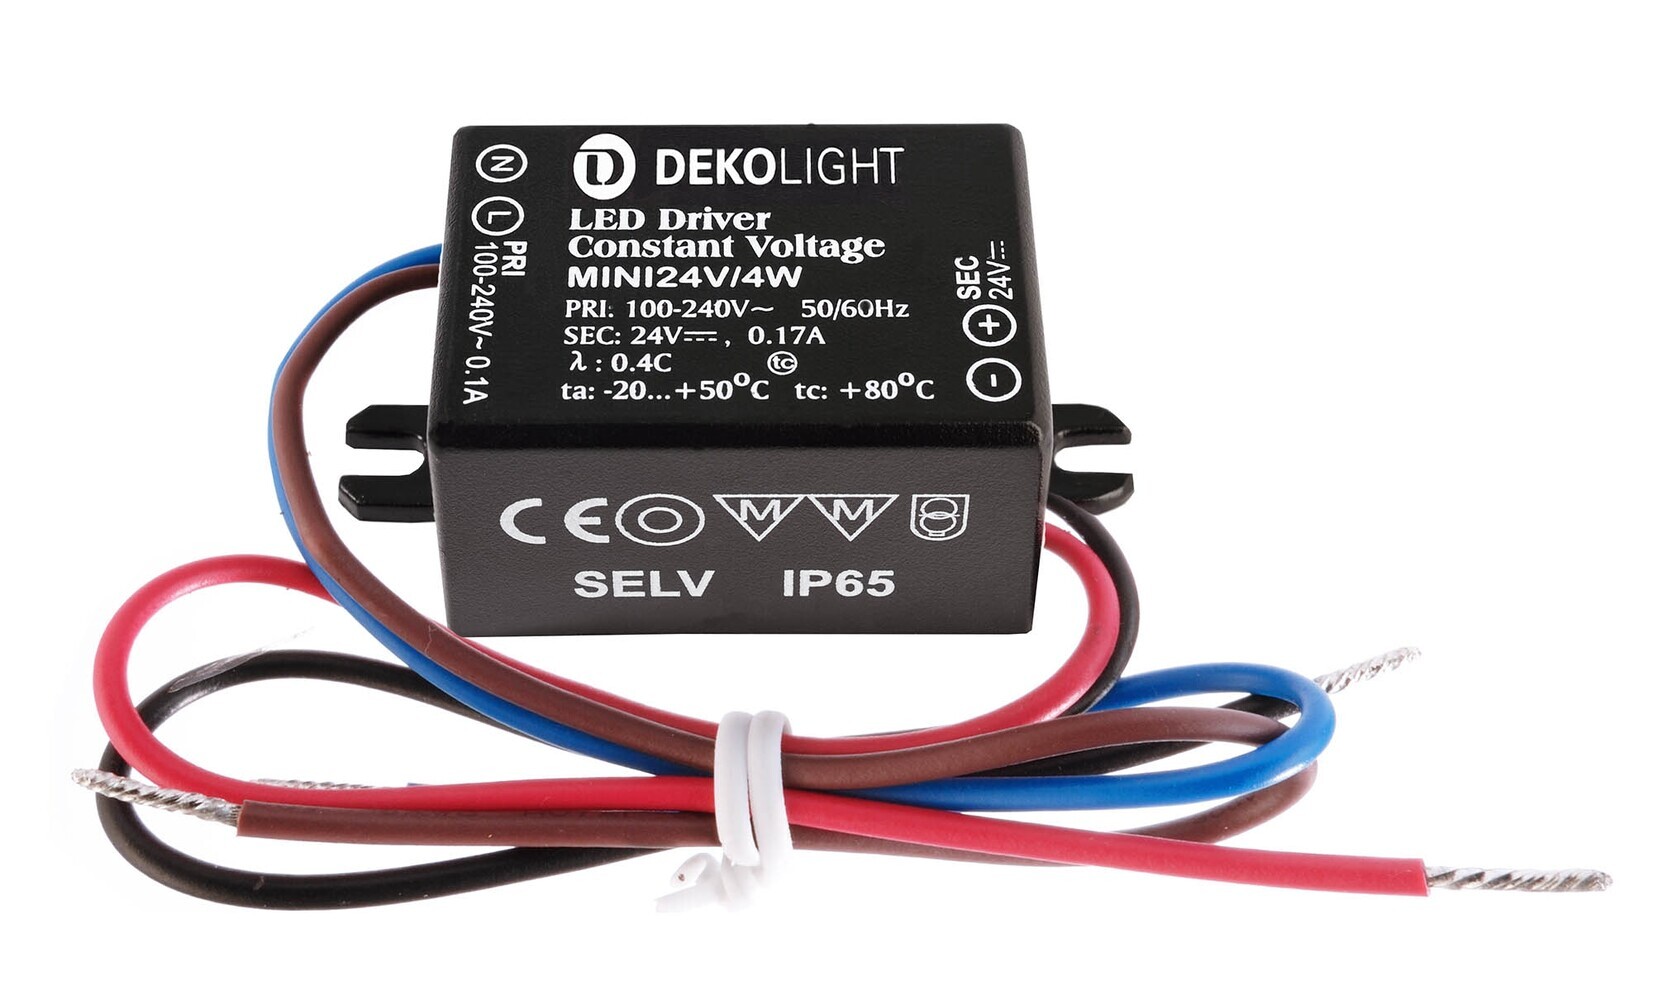 Stilvolles, spannungskonstantes LED Netzteil von der Marke Deko-Light